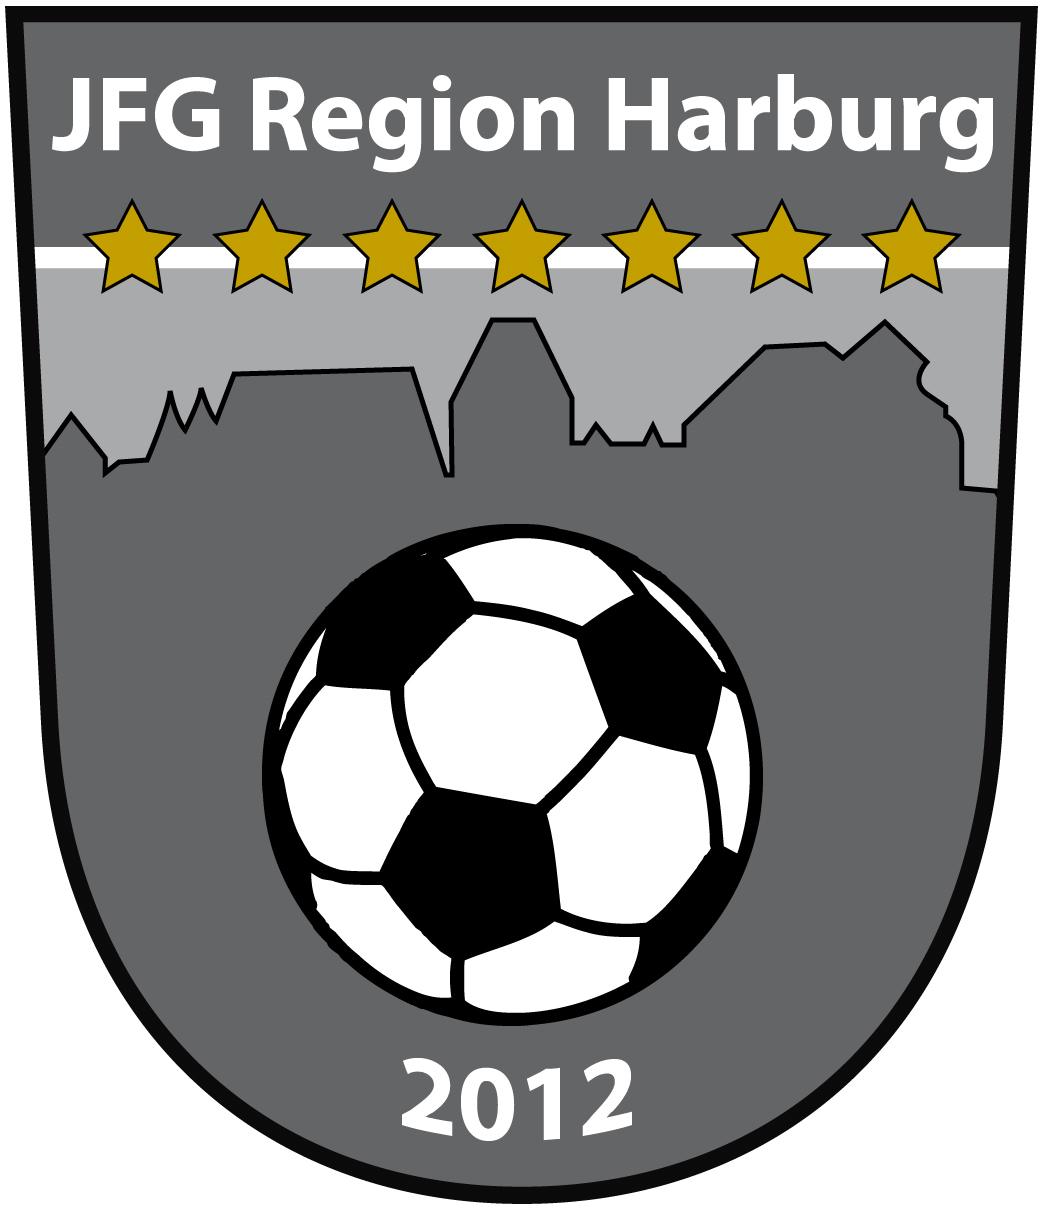 JFG Region Harburg Title Image